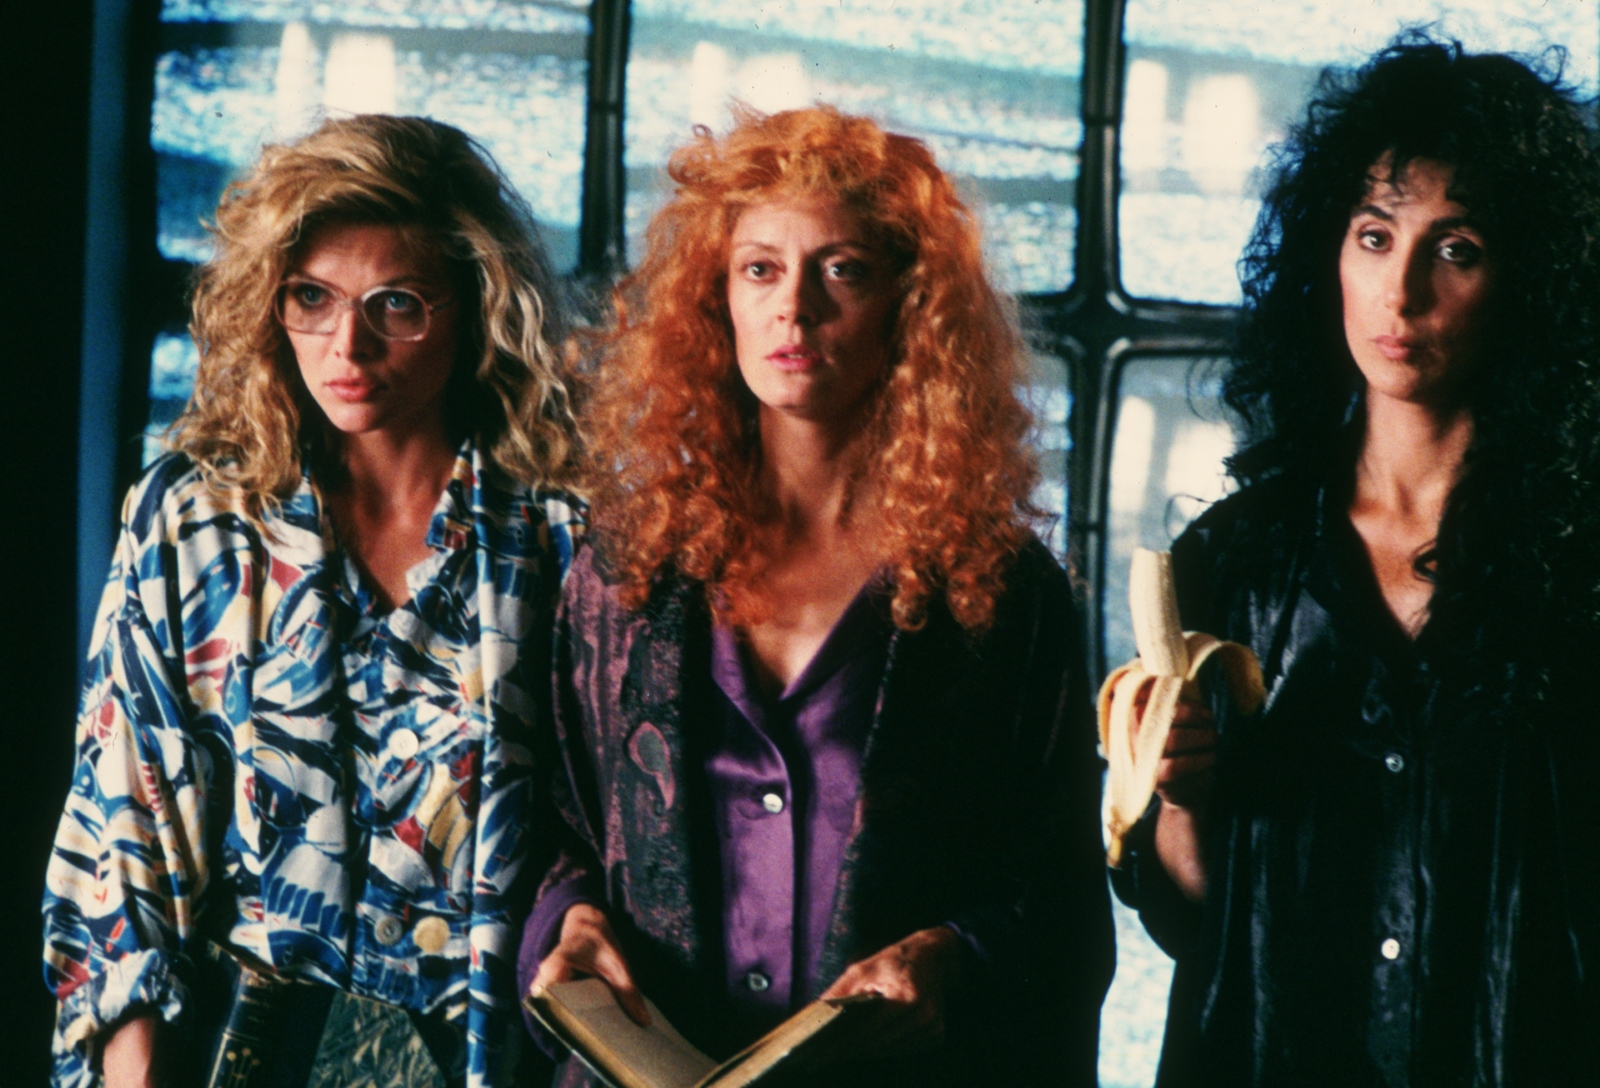 Kadr z filmu "Czarownice z Eastwick". Obok siebie stoją trzy kobiety o blond, rudych i czarnych włosach.